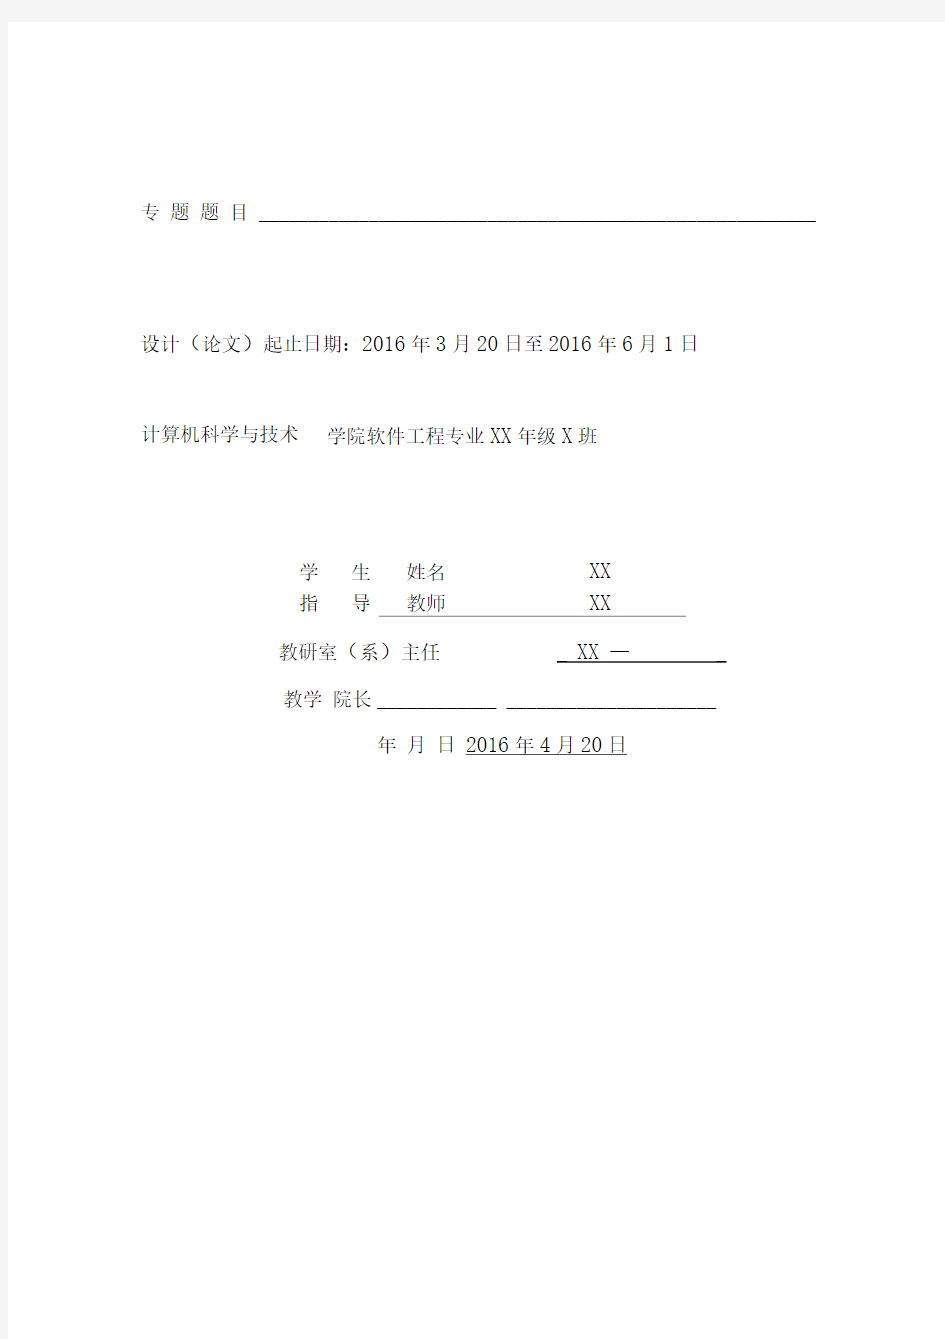 基于TesseractOCR和Baidu语音的证件识别系统毕业设计开题报告